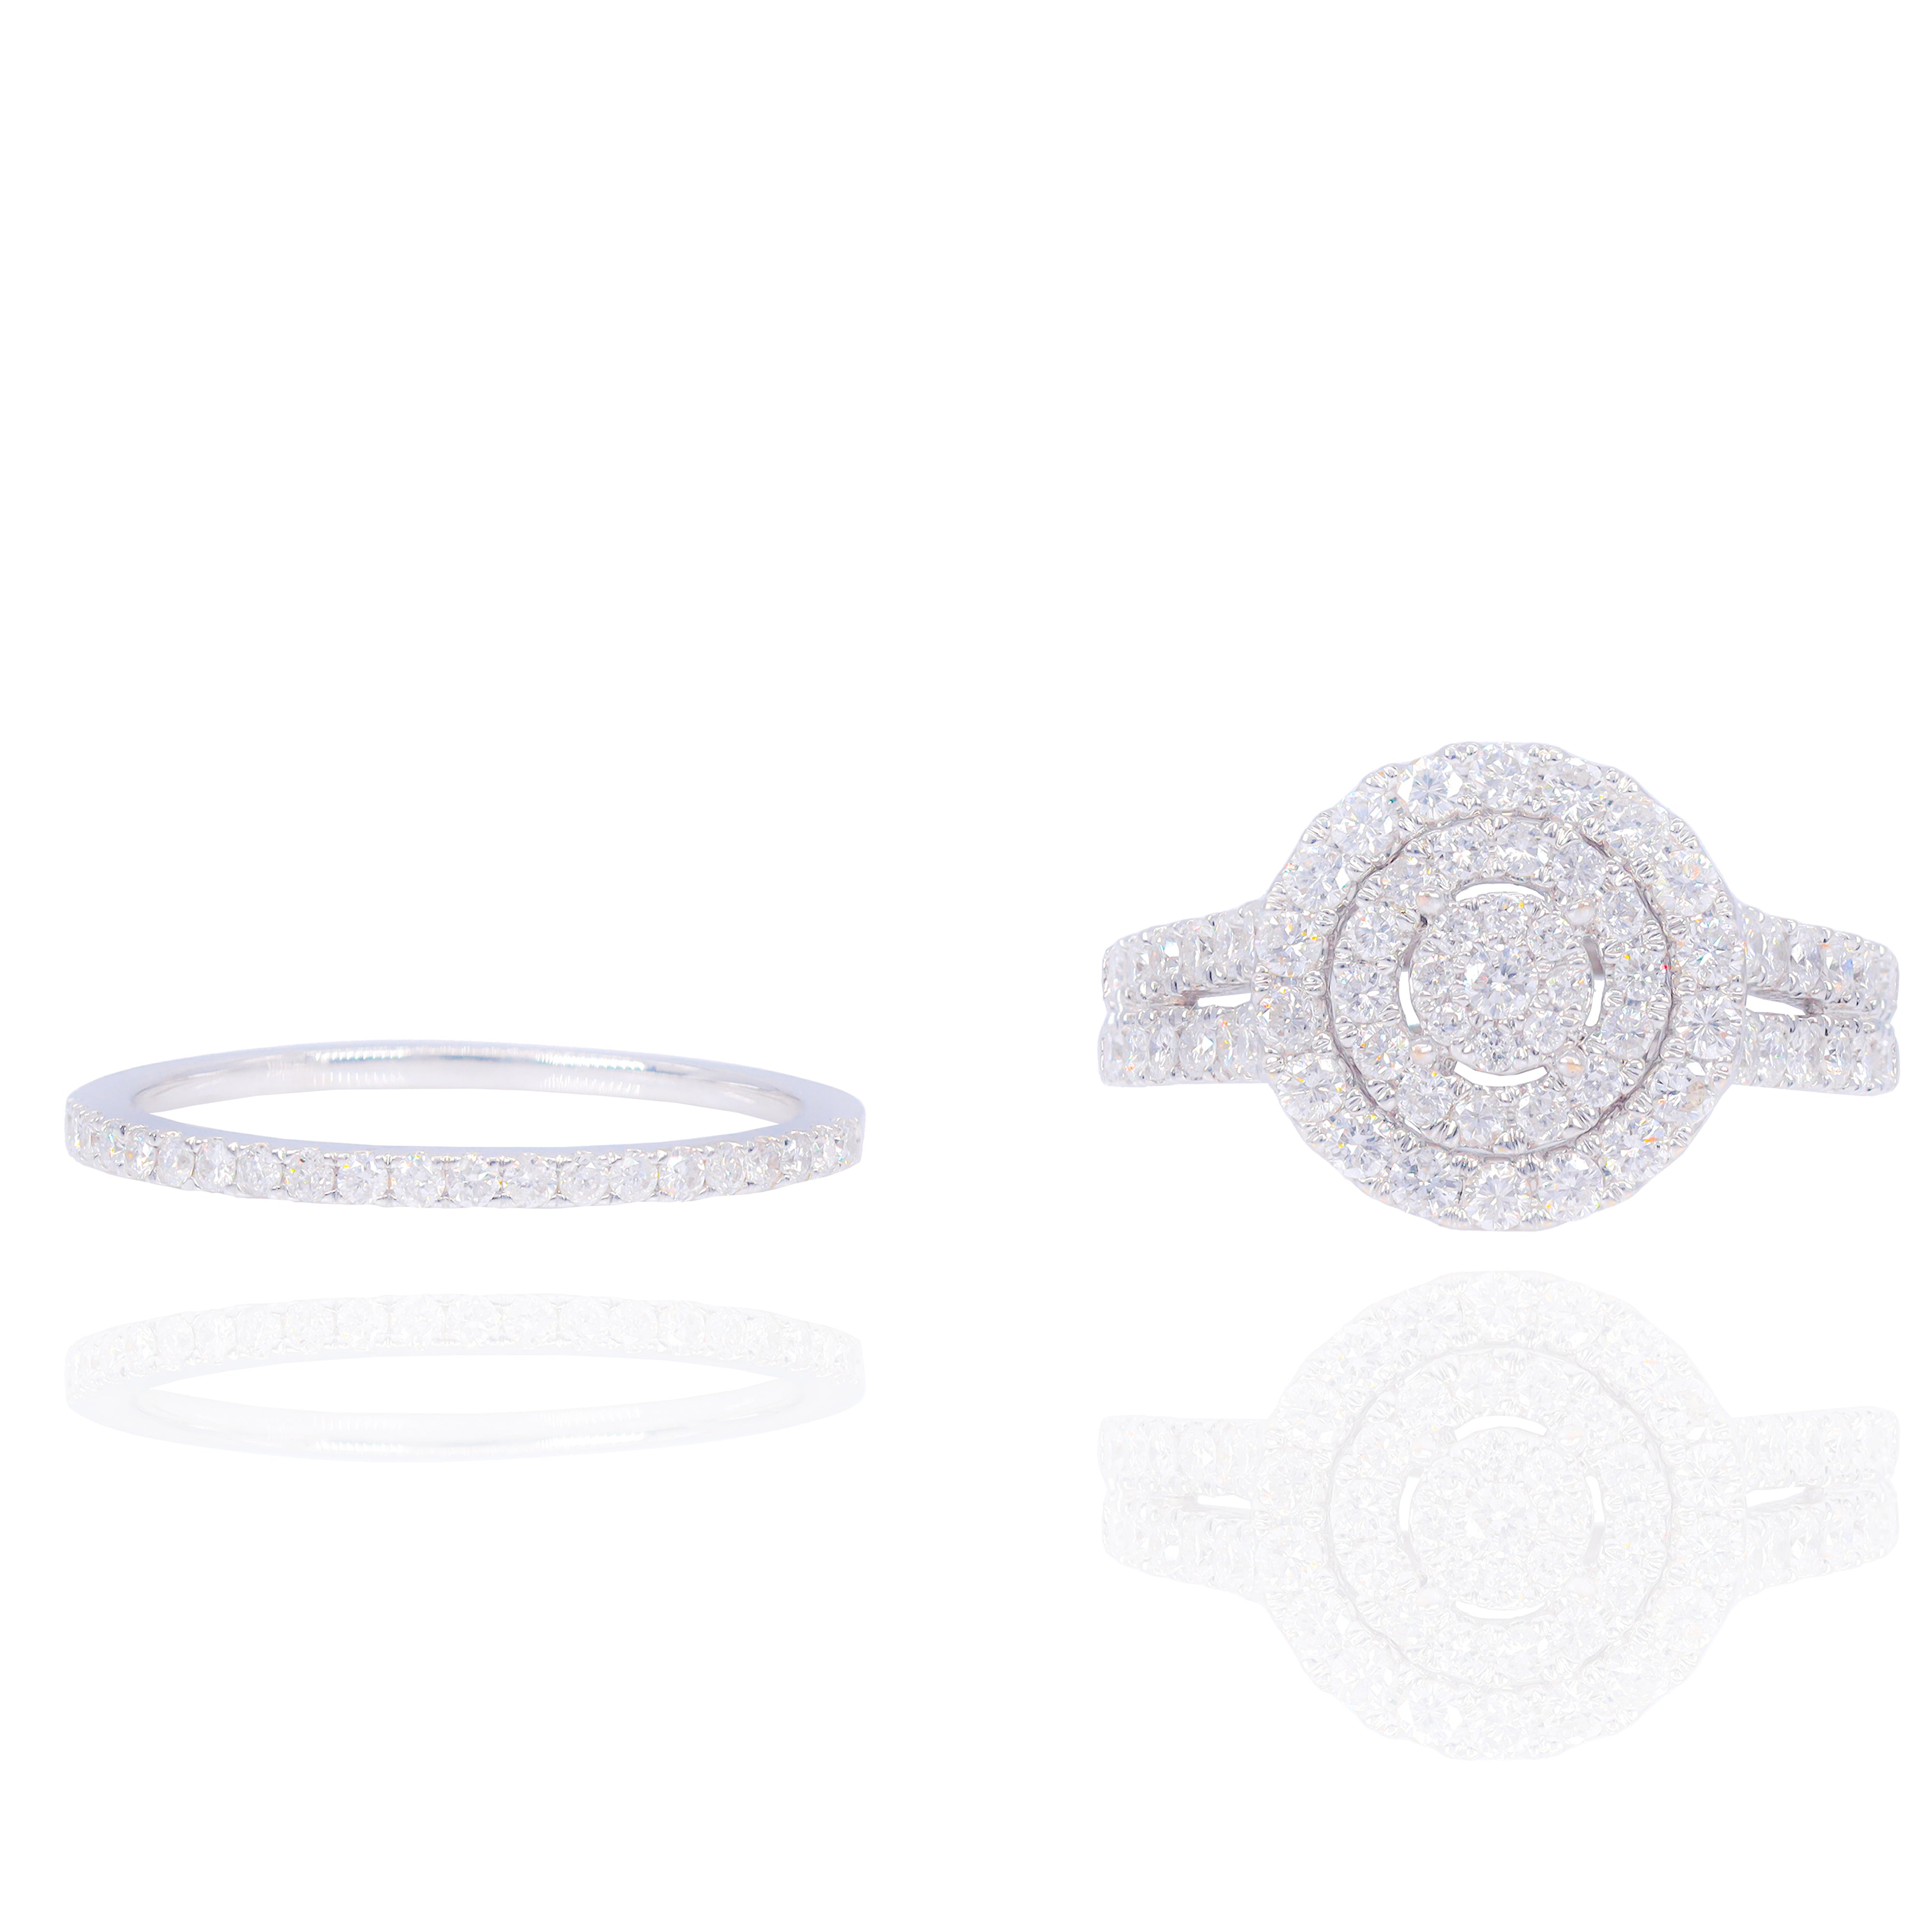 Round Double Halo Diamond Engagement Ring & Band